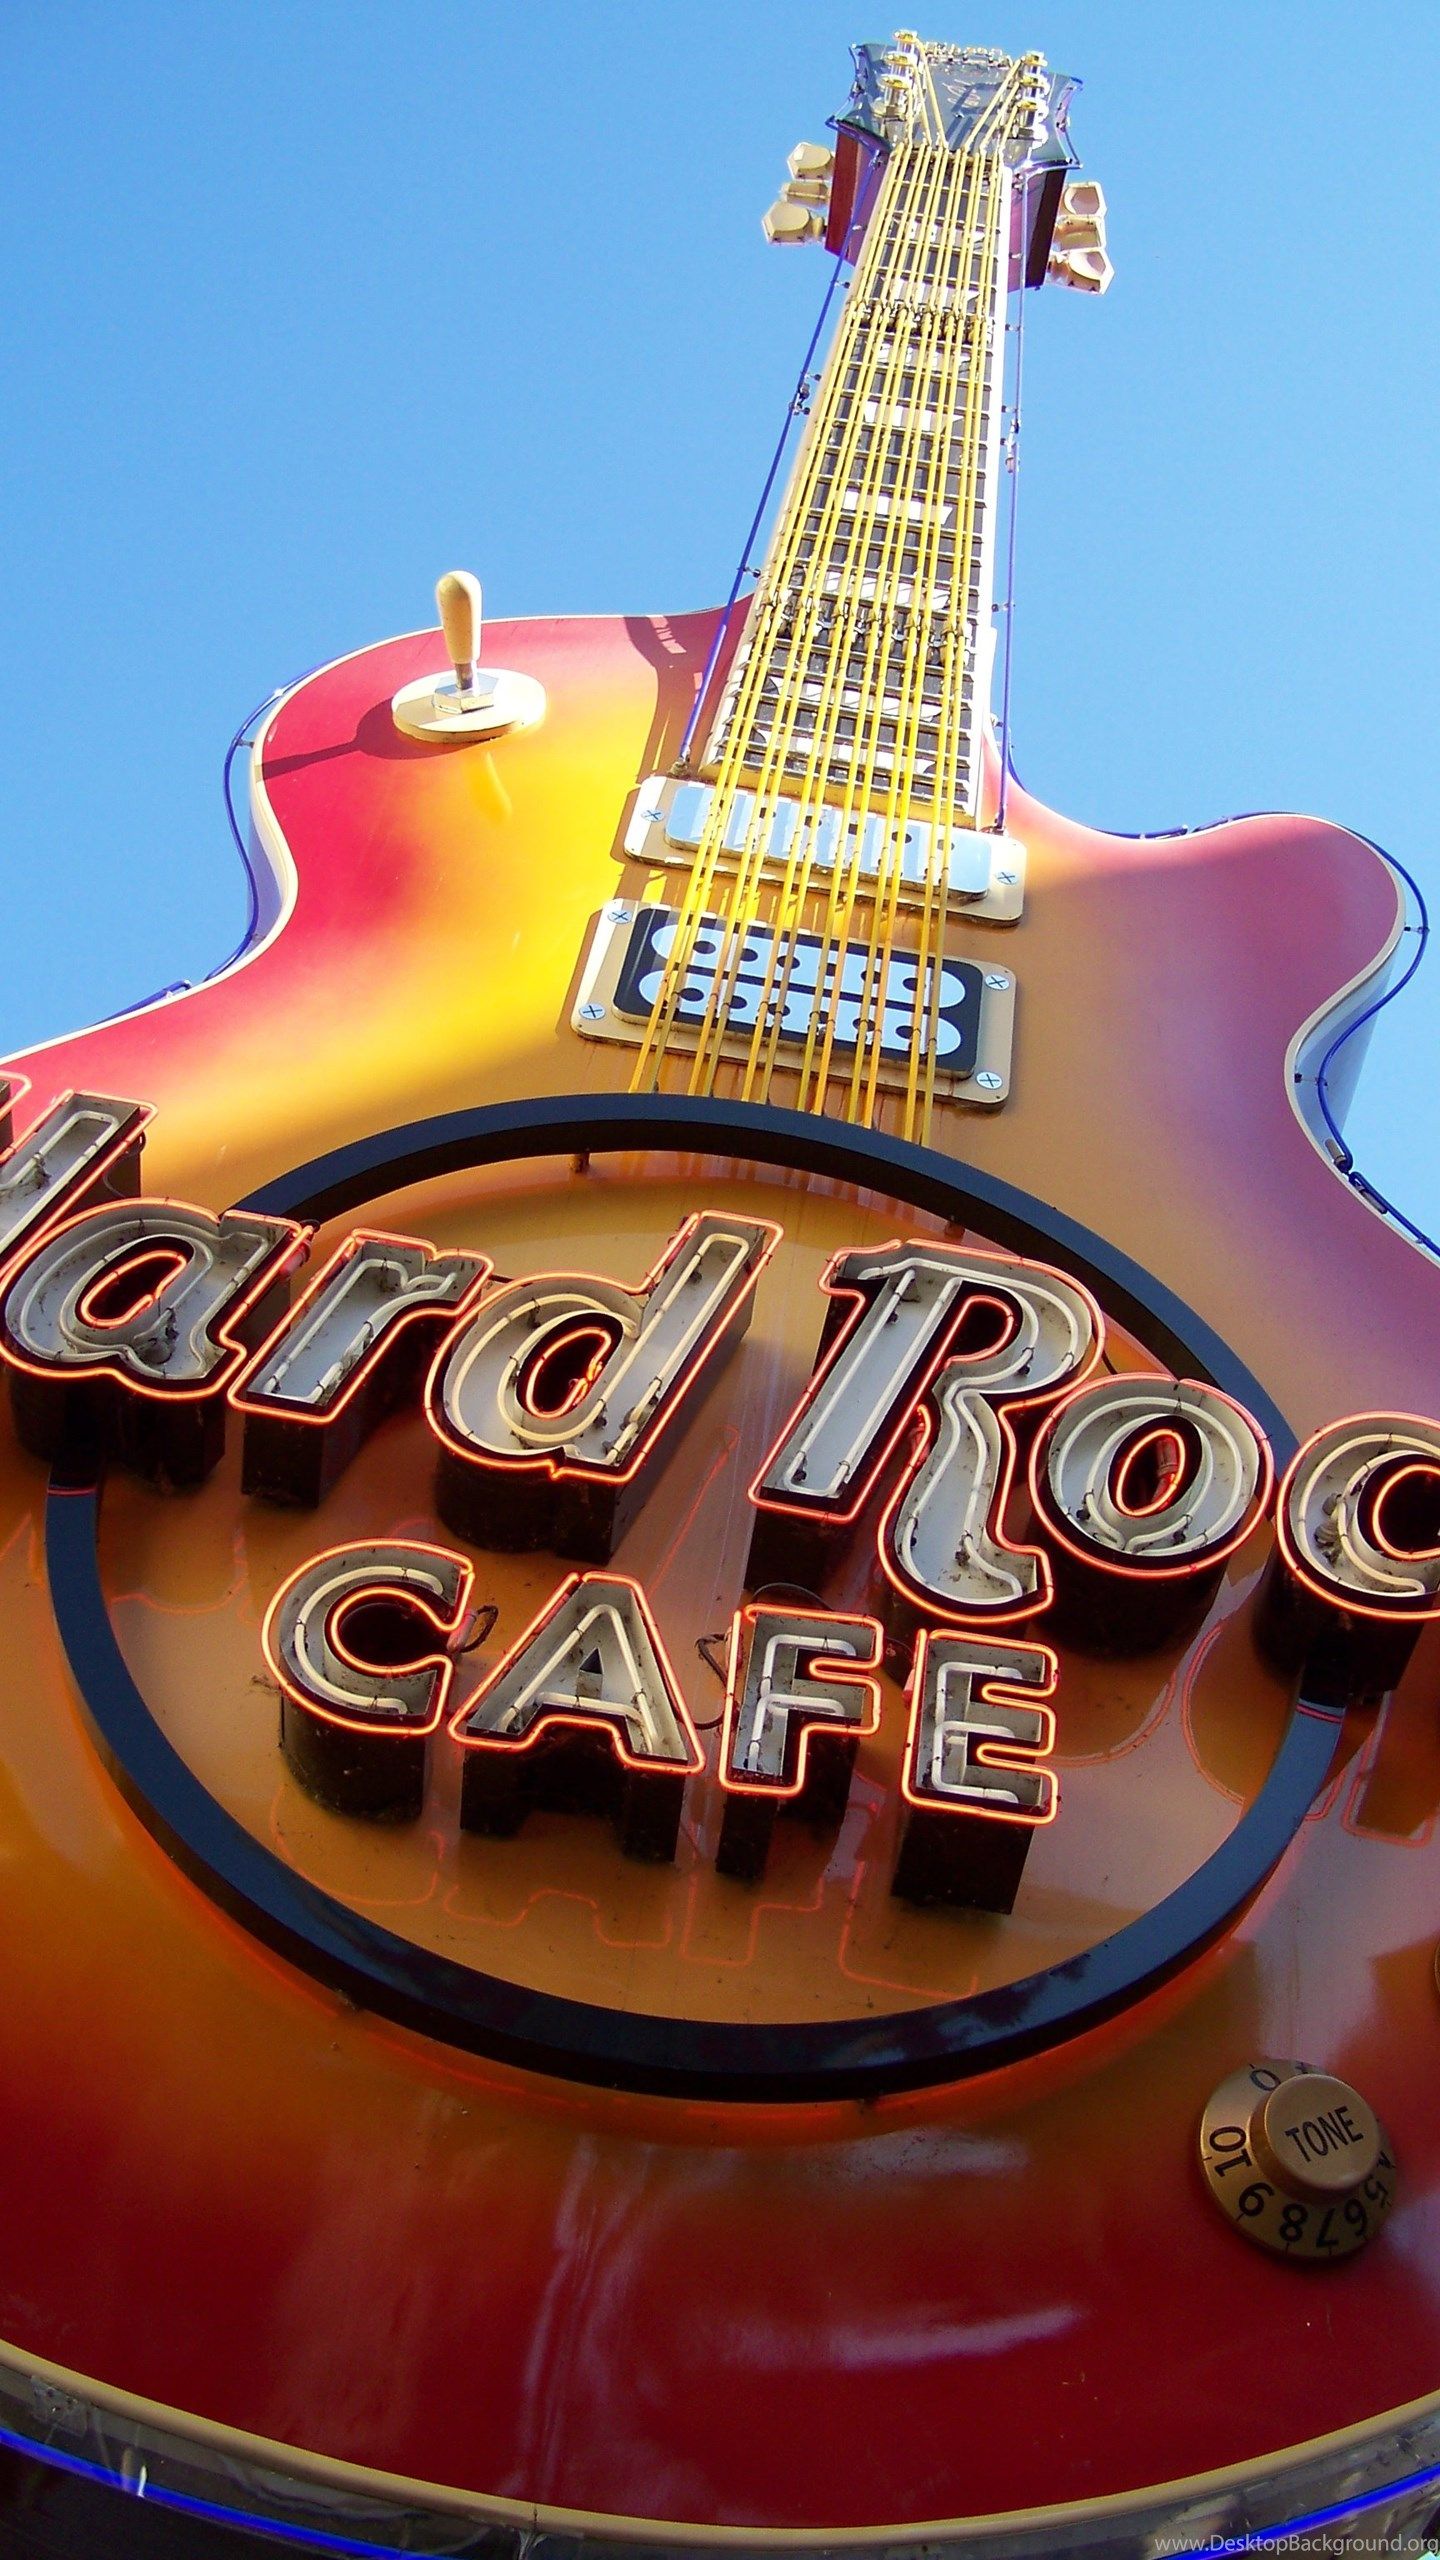 Best Misc Wallpaper: Hard Rock Cafe, Misc Desktop Background